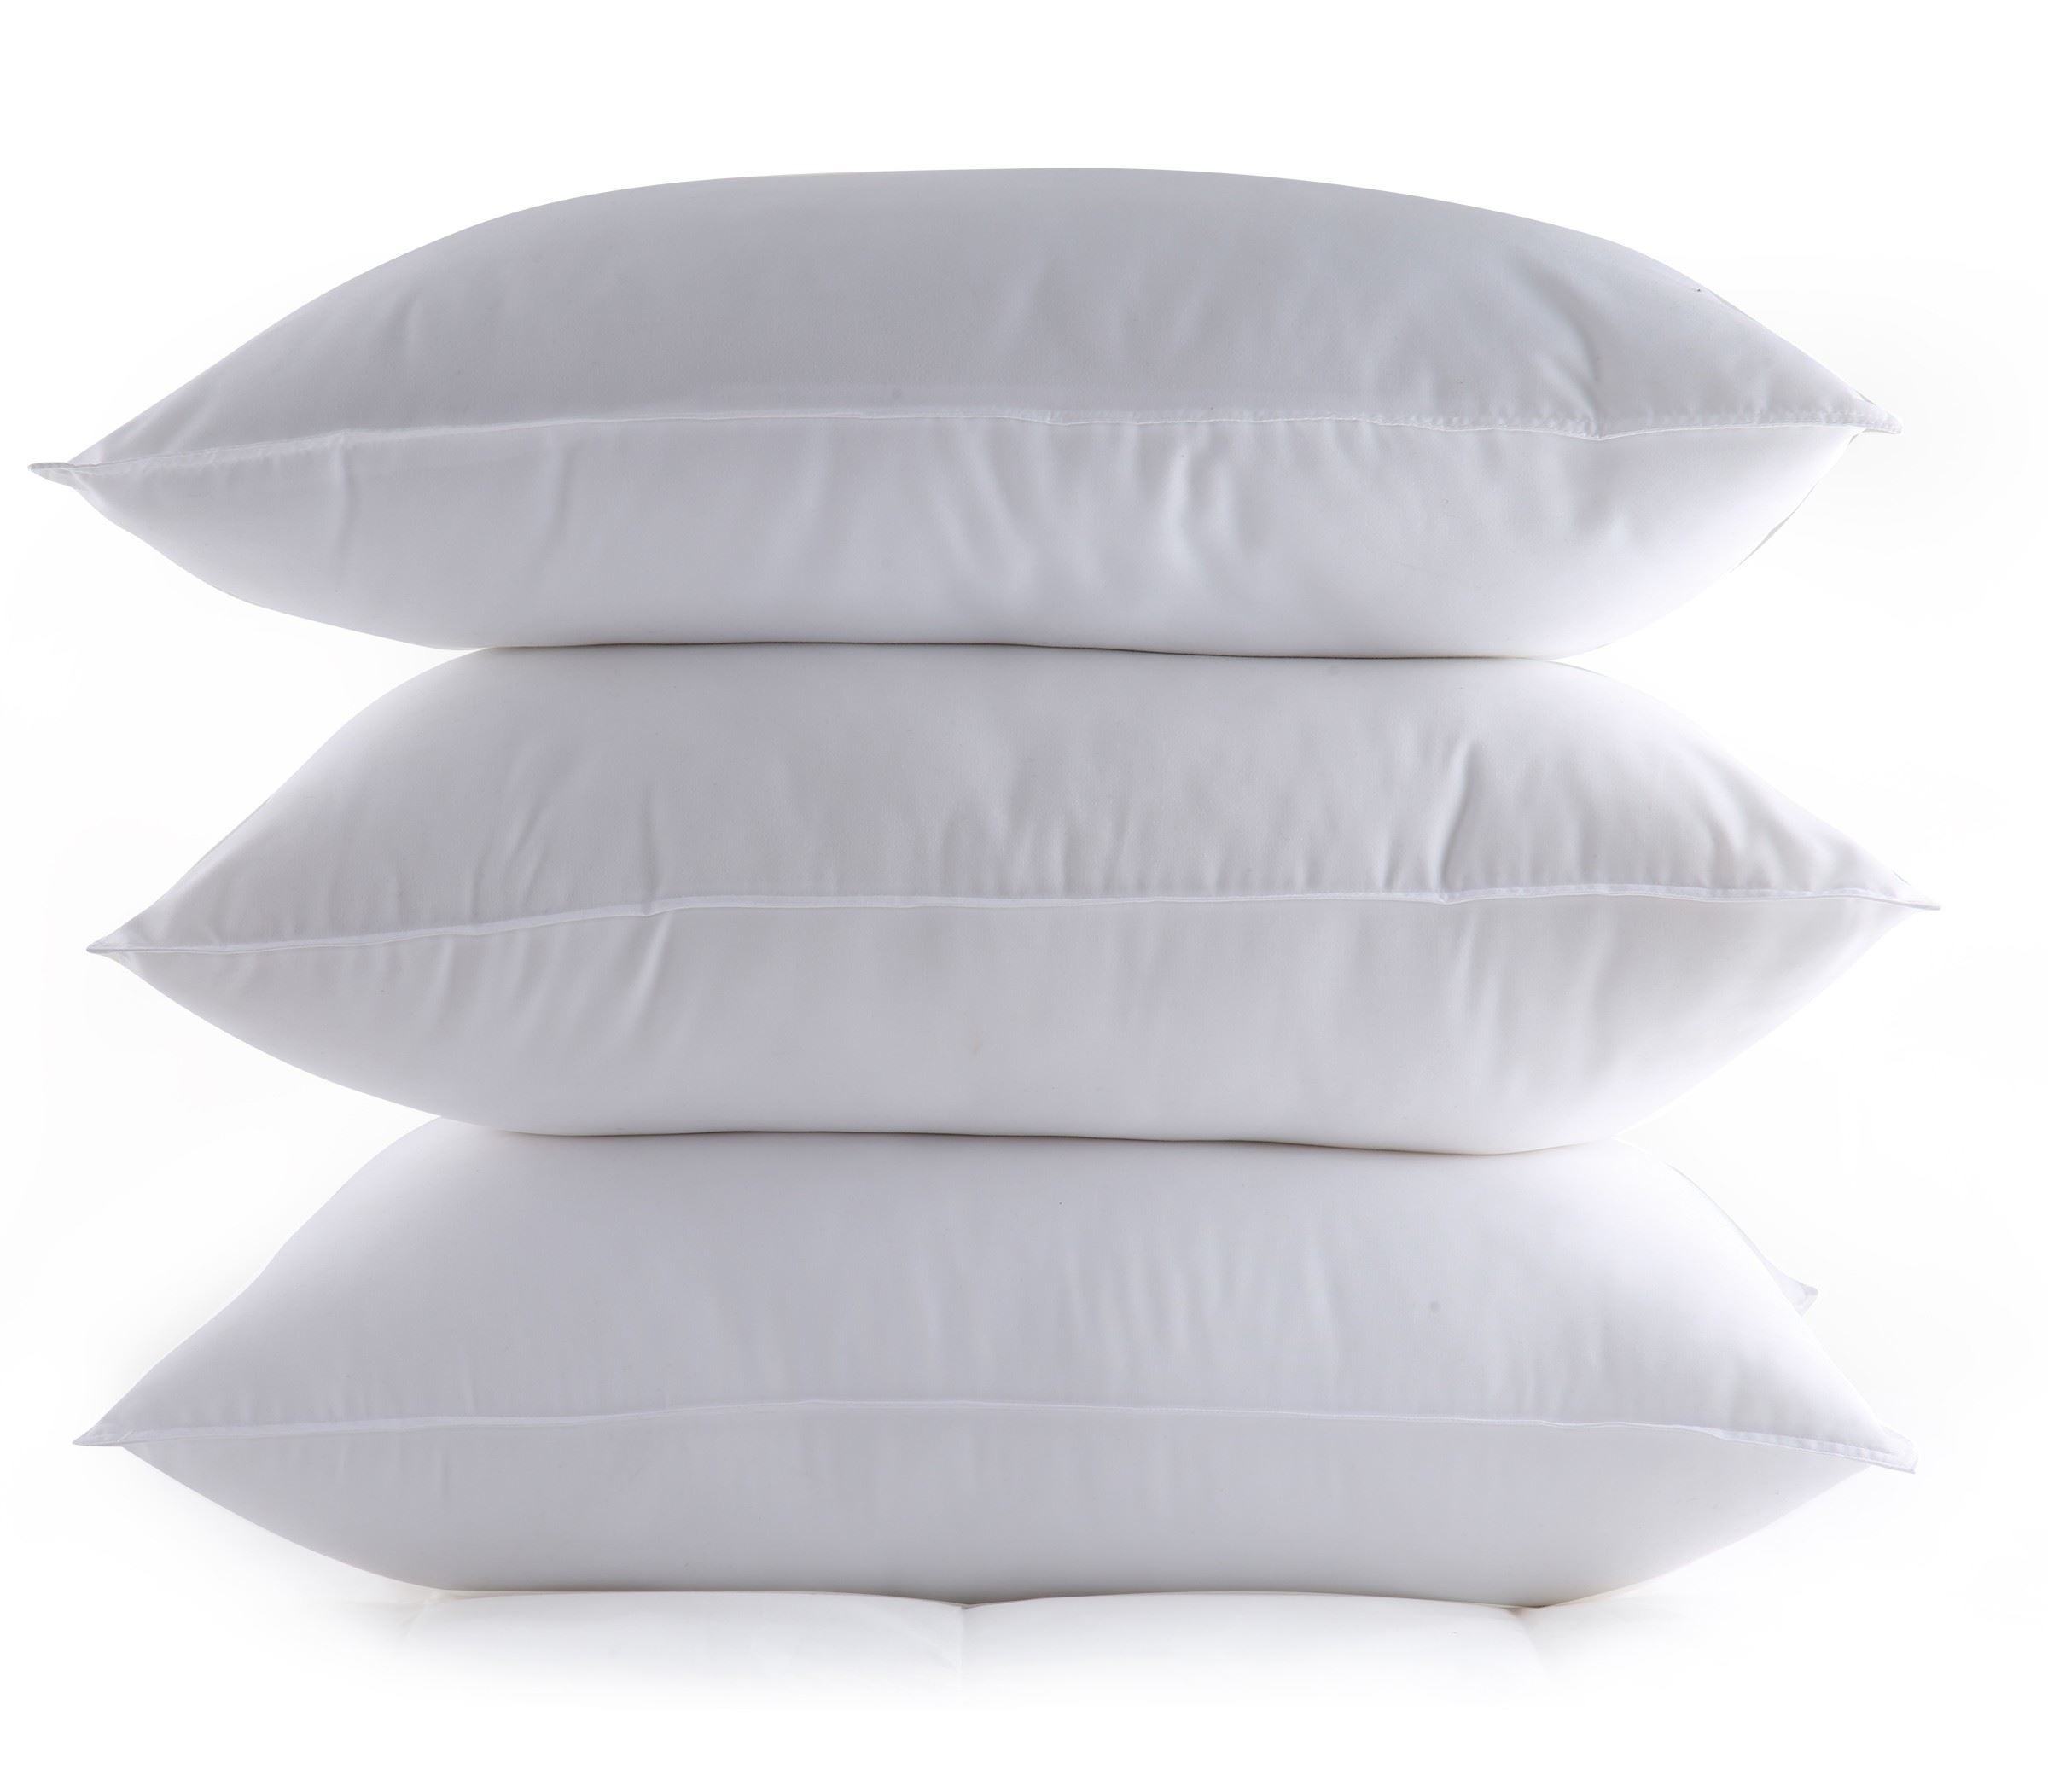 Μαξιλάρι Ύπνου Nef-Nef Comfort Pillow 500 Μαλακό 48Χ68